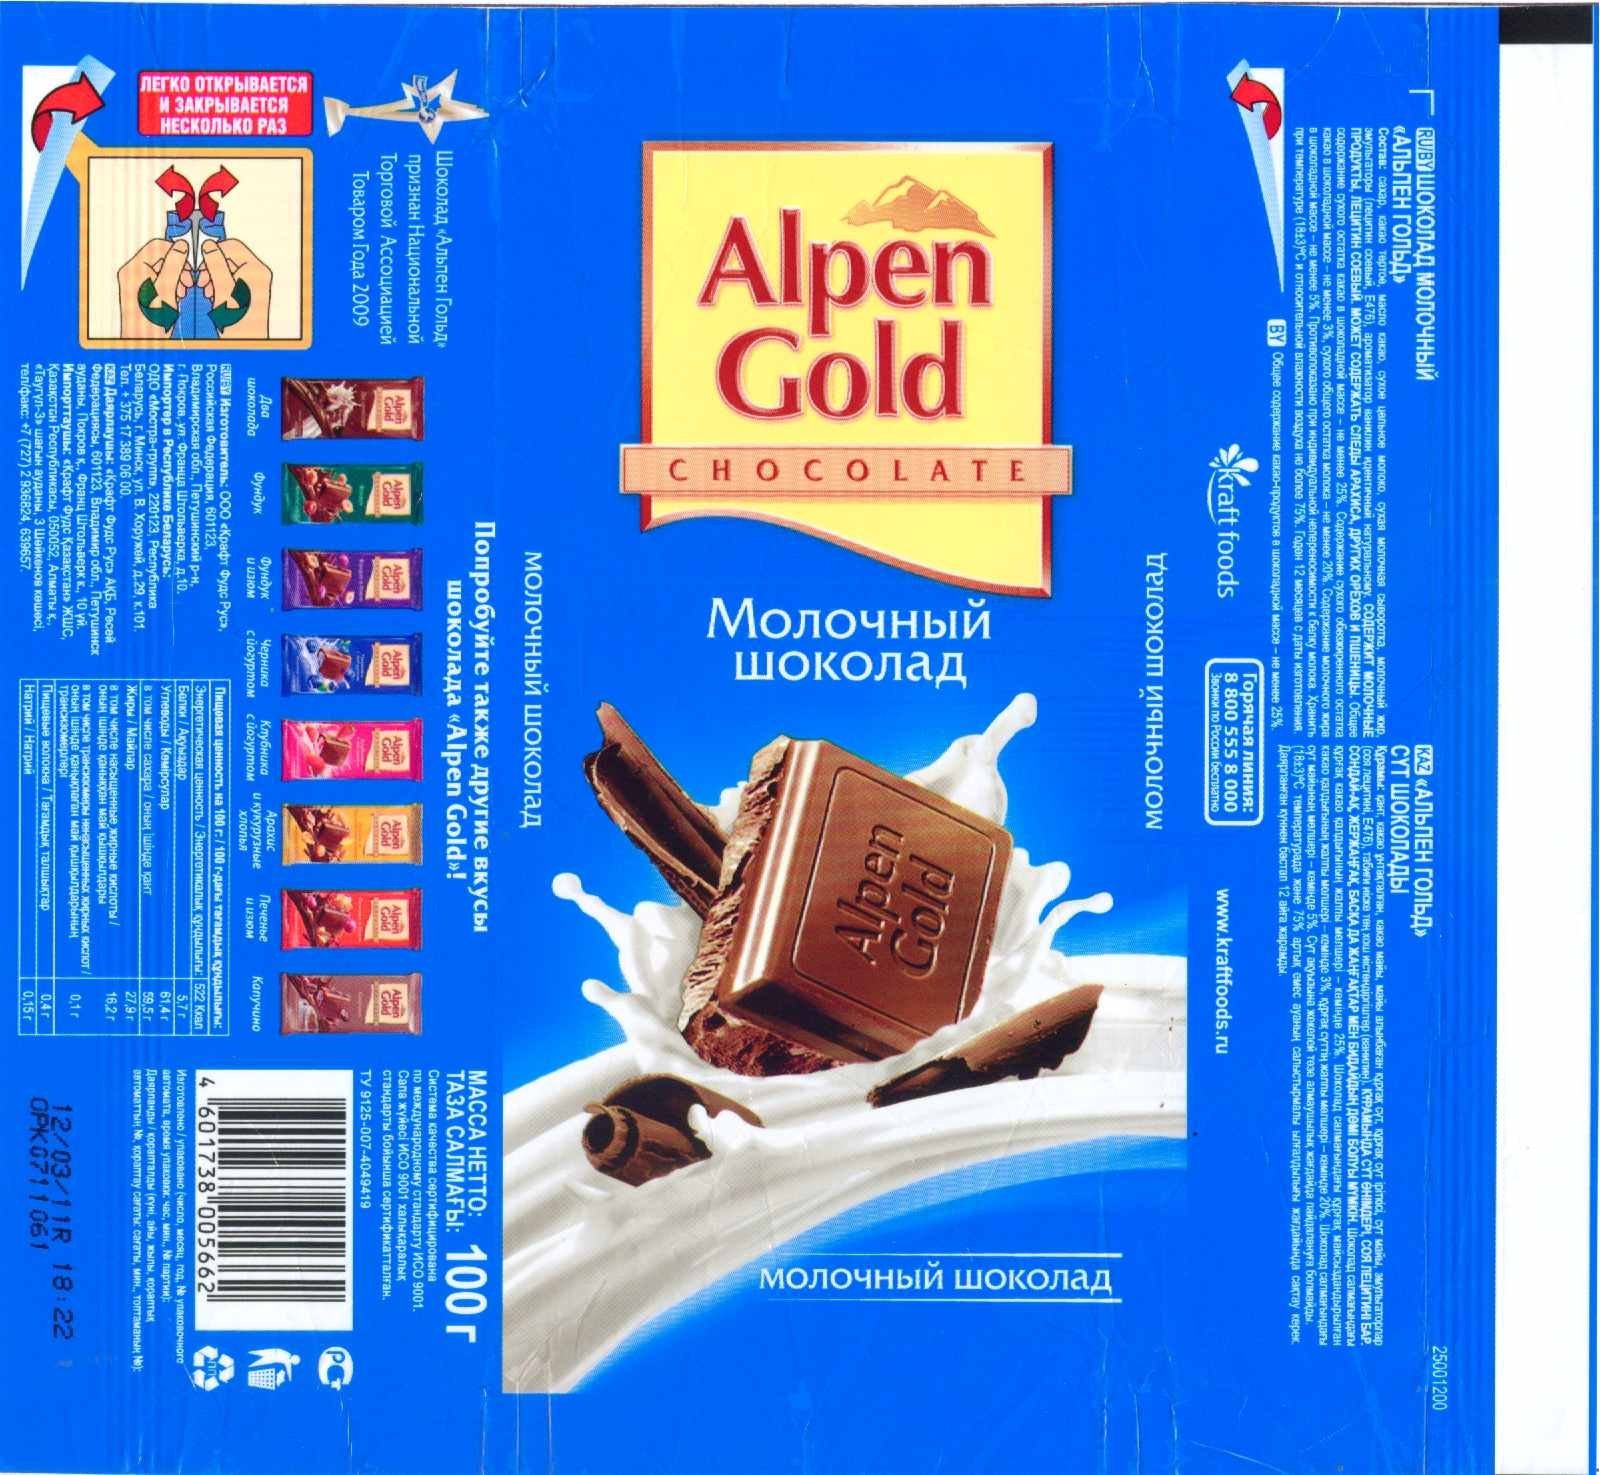 1 грамм шоколада. Шоколад Альпен Гольд масса. Масса шоколадки Альпен Гольд. Шоколад Альпен Гольд 1990 упаковка. Шоколад Альпен Гольд 1990.